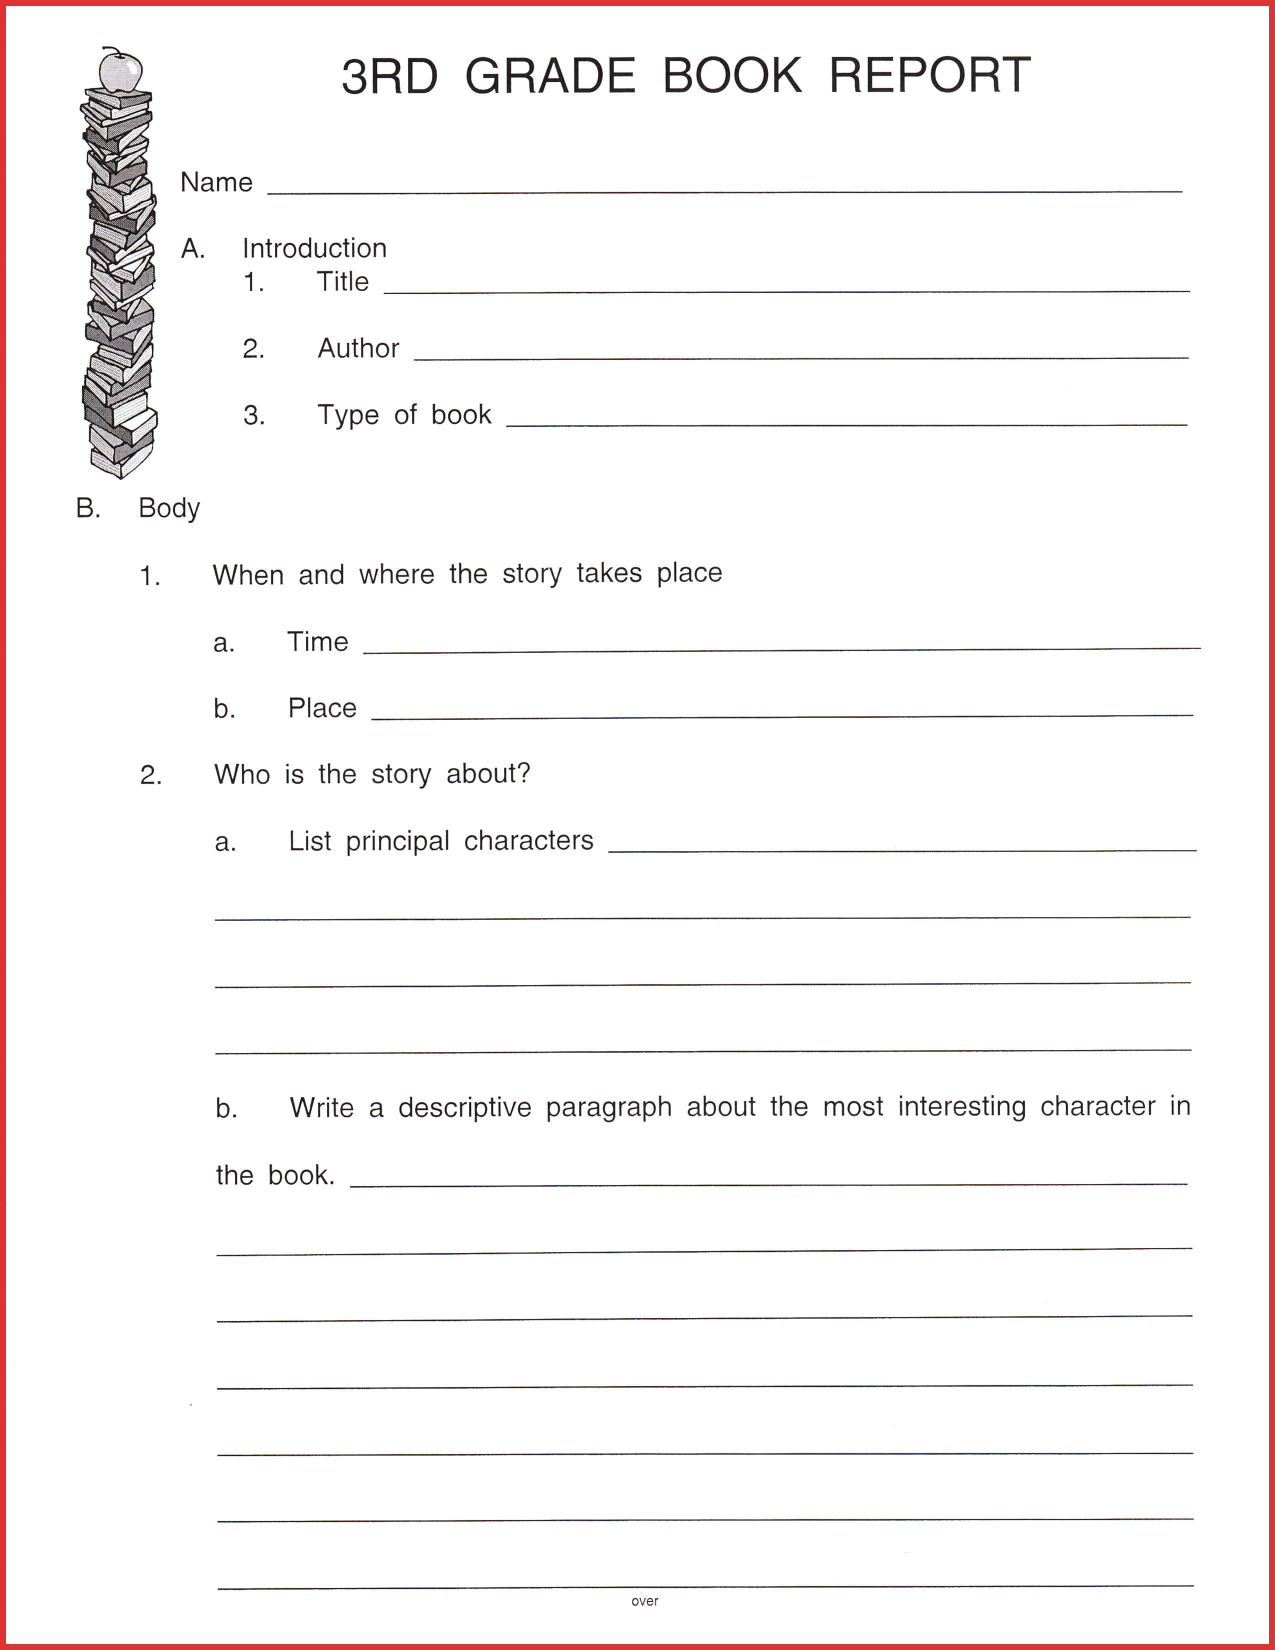 Fresh 3Rd Grade Book Report Template | Job Latter For 1St Inside Book Report Template 3Rd Grade